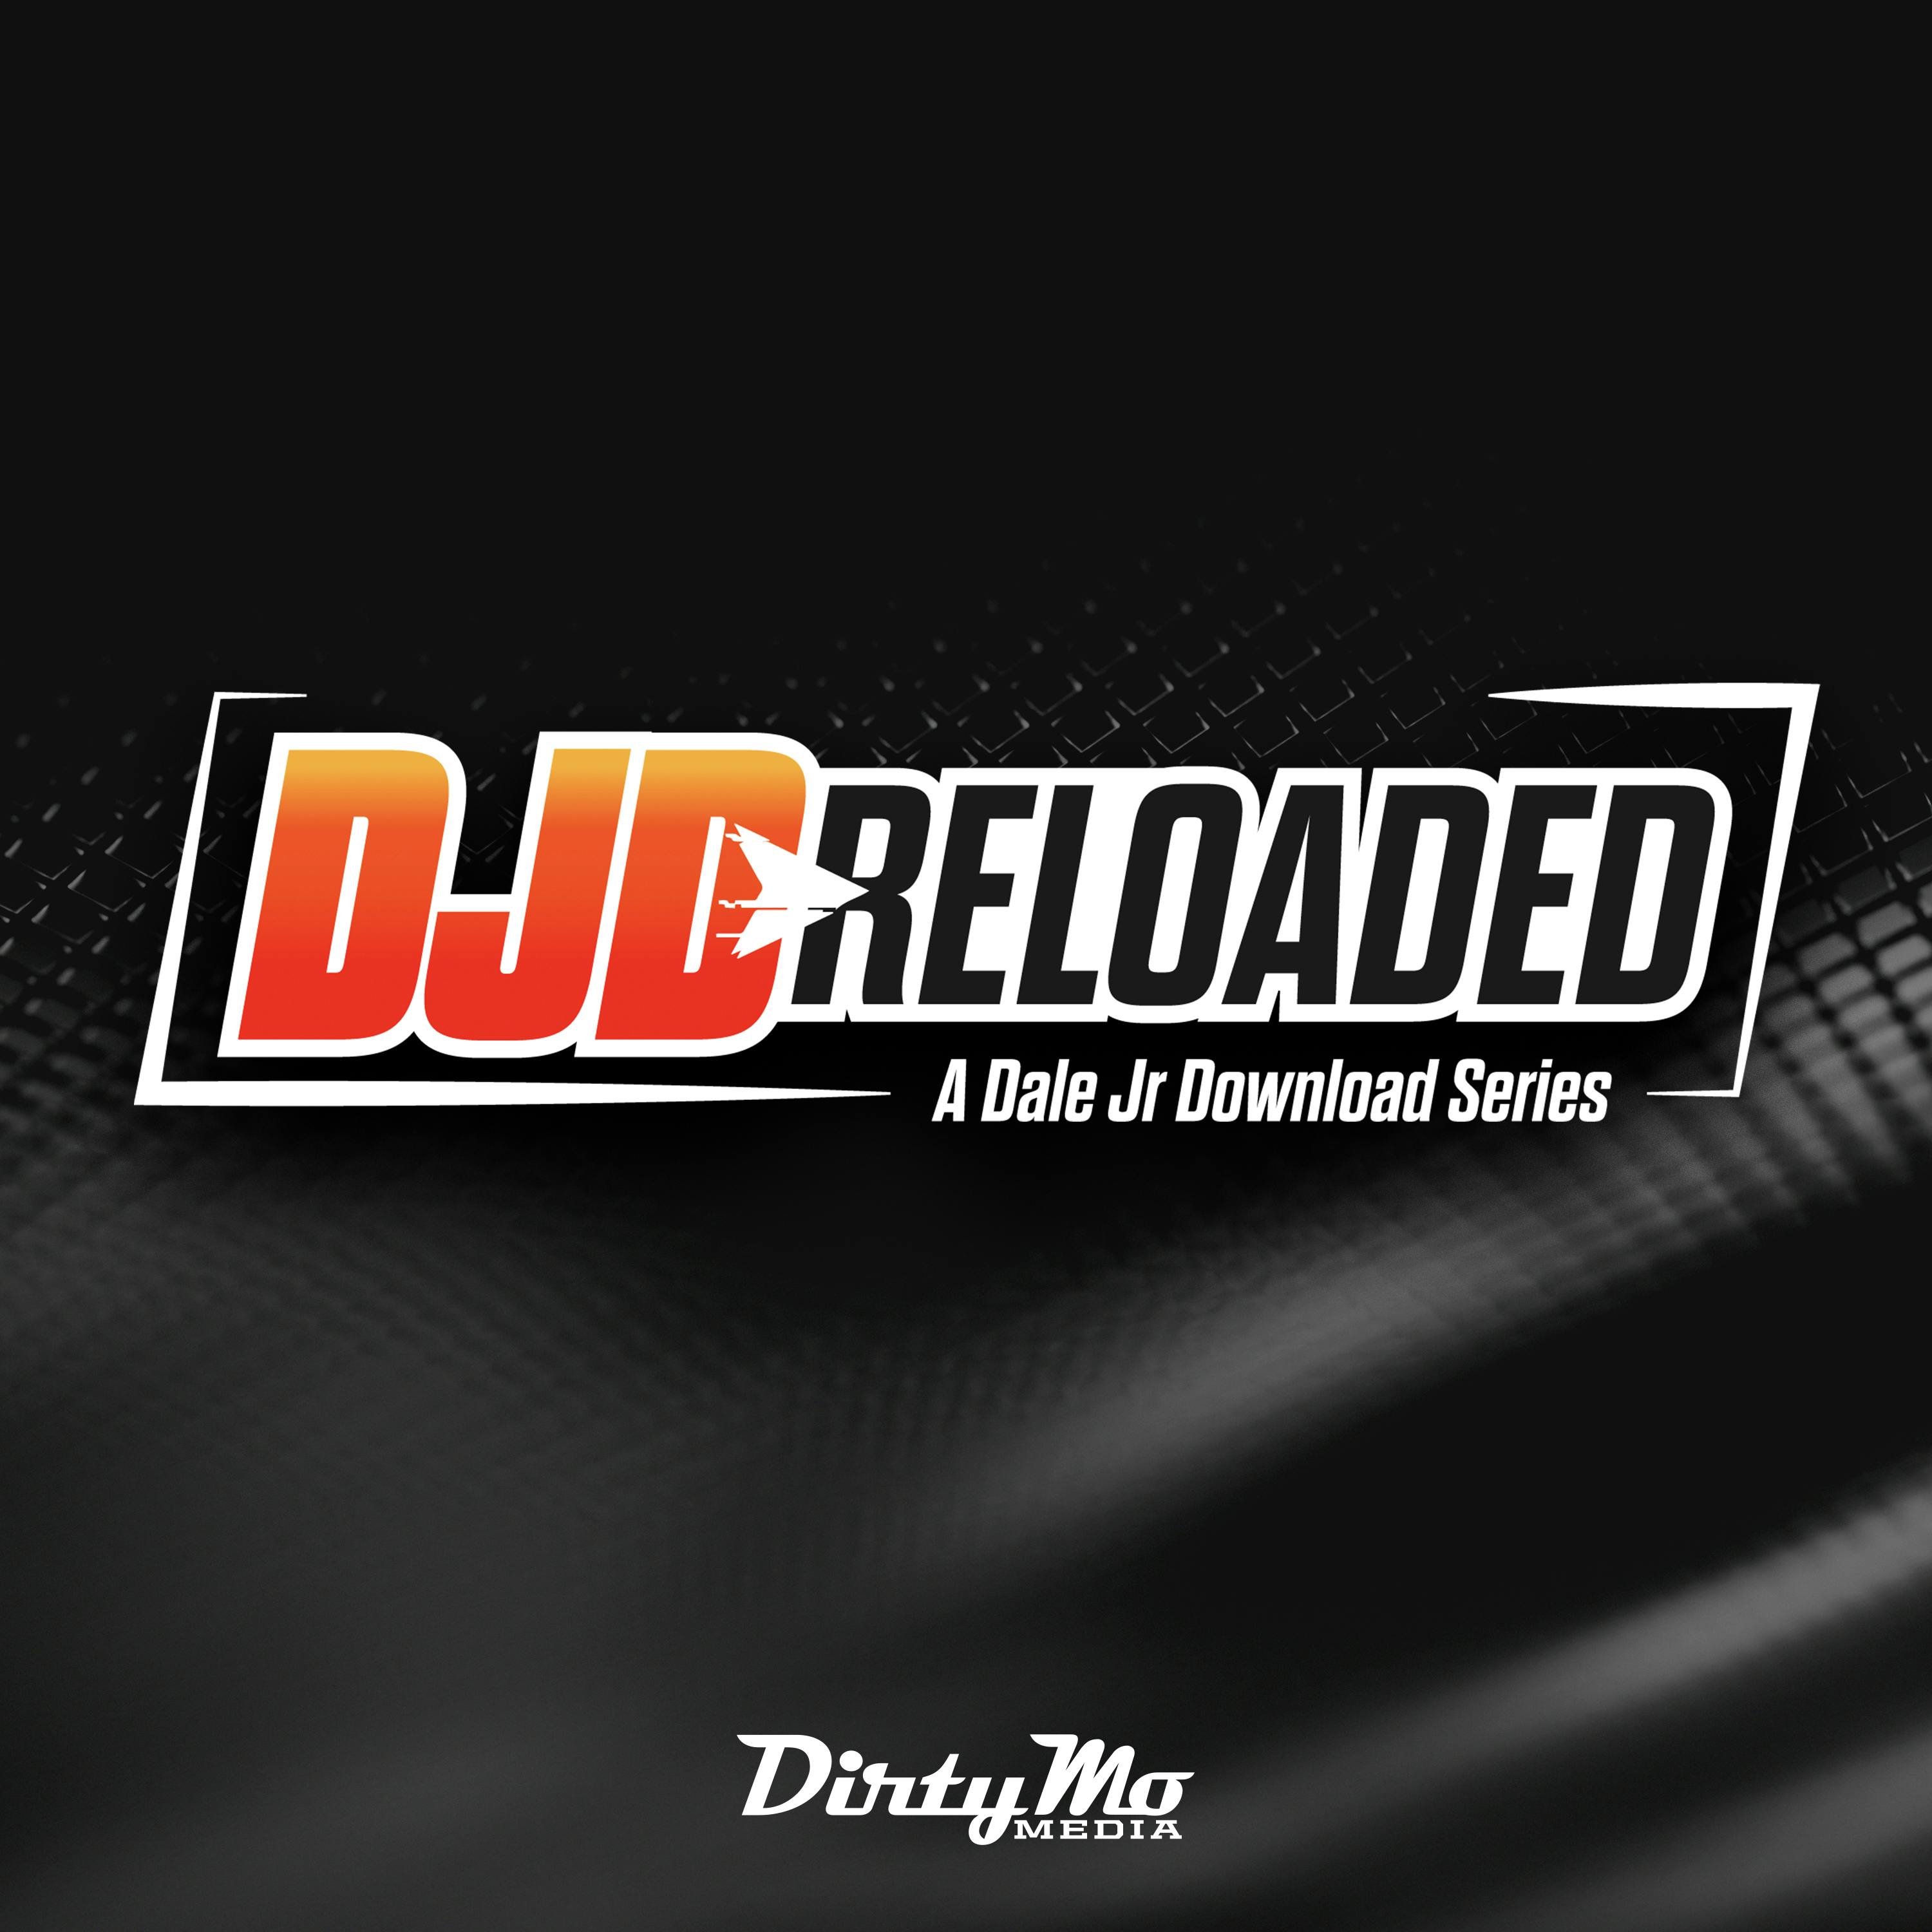 DJD Reloaded - The Best Dale Jr. Impressions